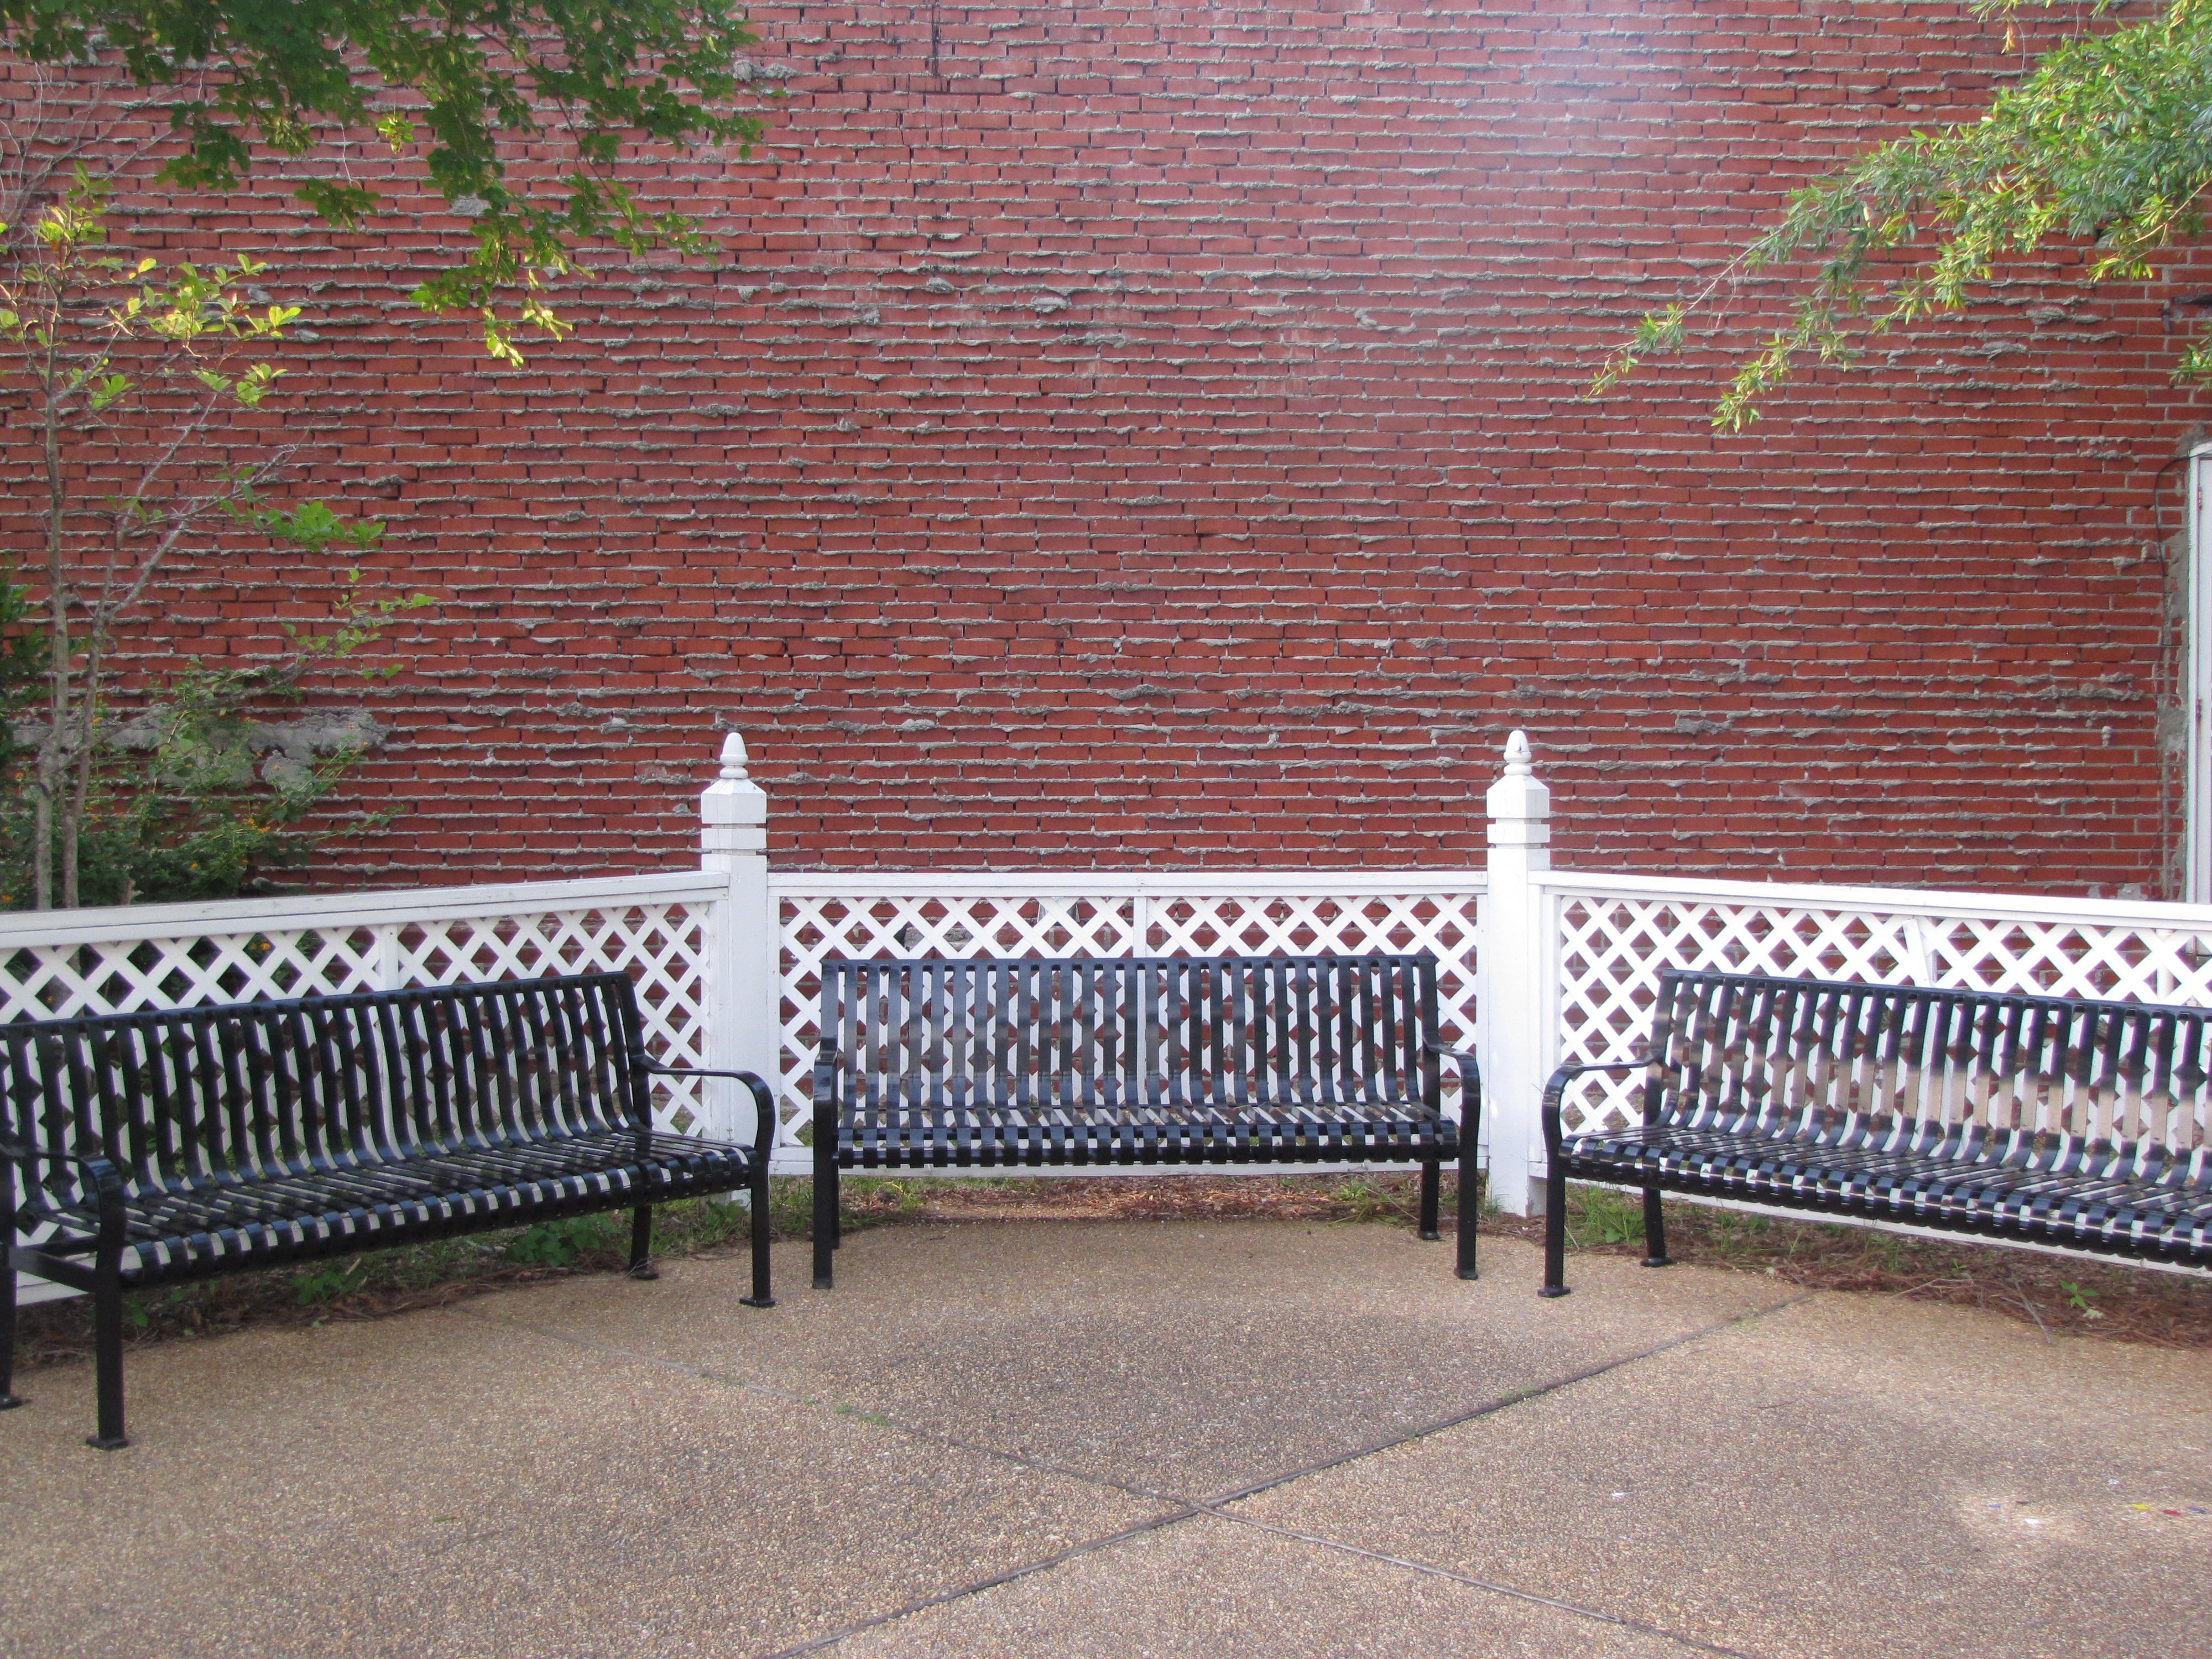 3 metal bench